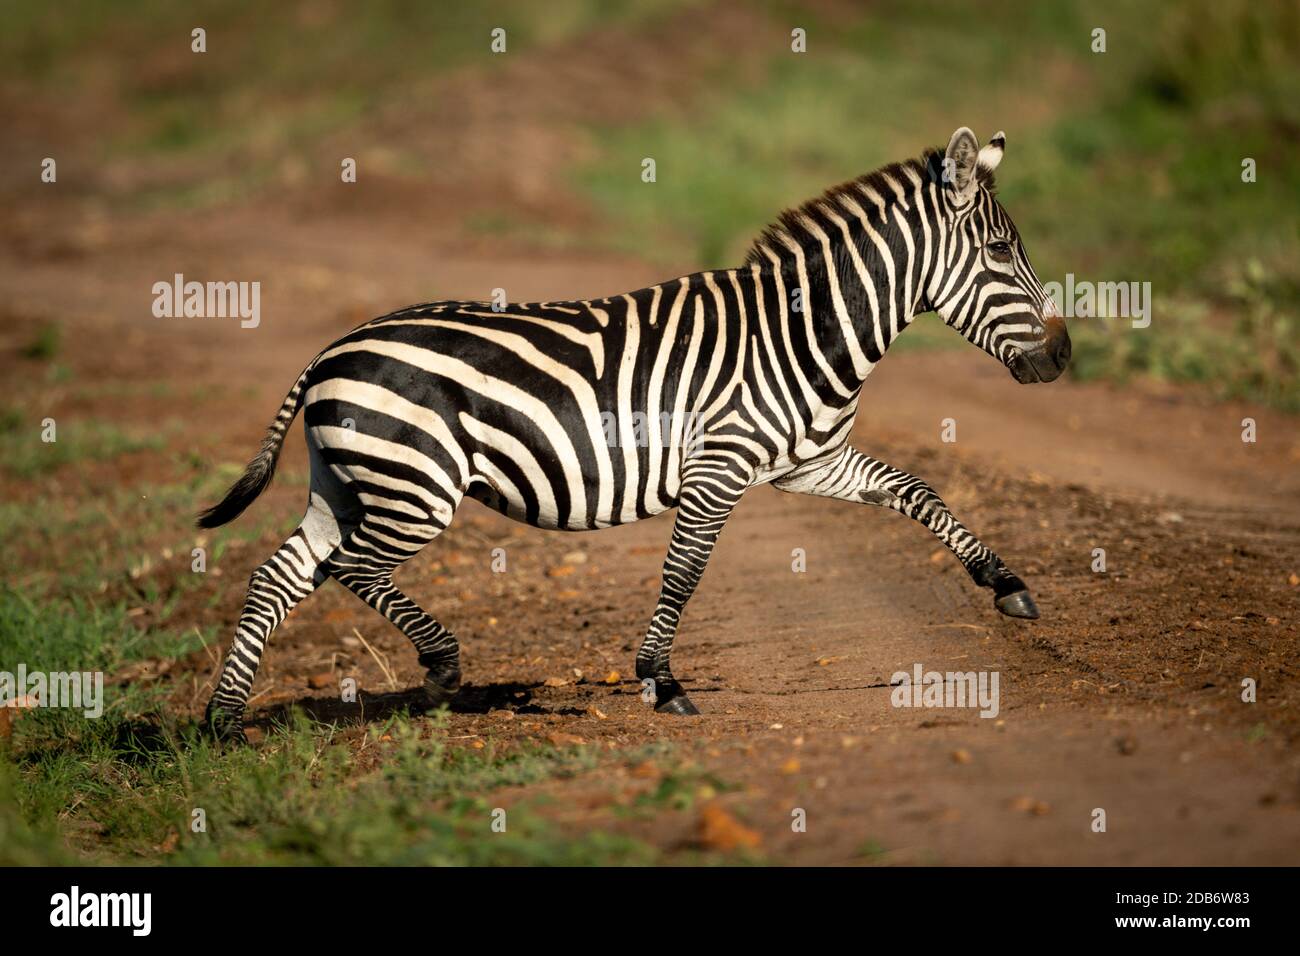 Pianura zebra ascensori zoccolo di attraversamento su pista Foto stock -  Alamy